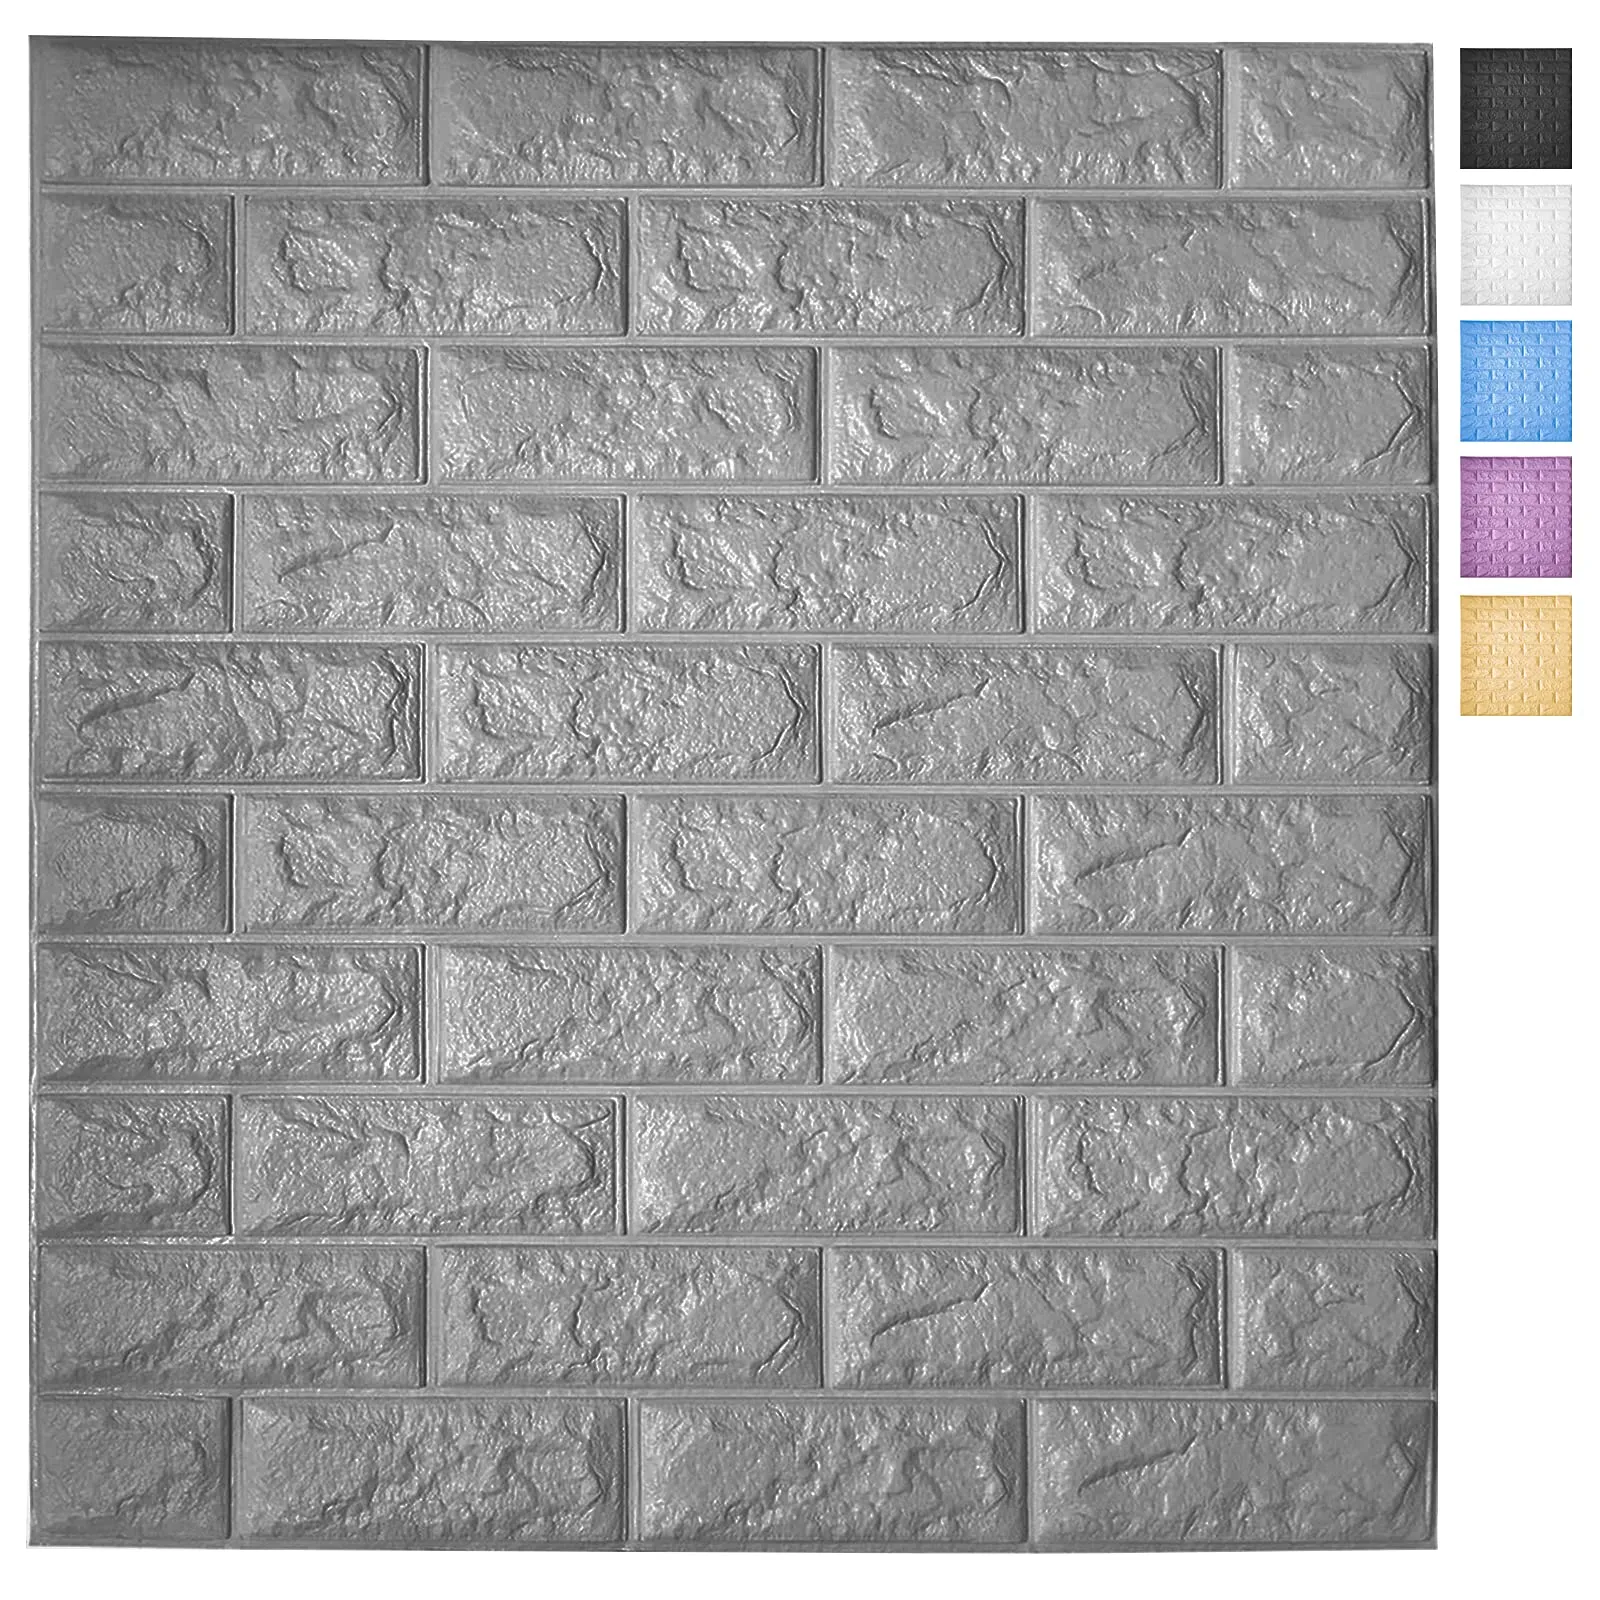 Art3d 5-paczka Peel and Stick 3D Tapeta Panele do Wewnętrznych Wall Decor Samoprzylepne Pianki Tapety z cegły w kolorze szarym, obejmuje 29 sq.ft